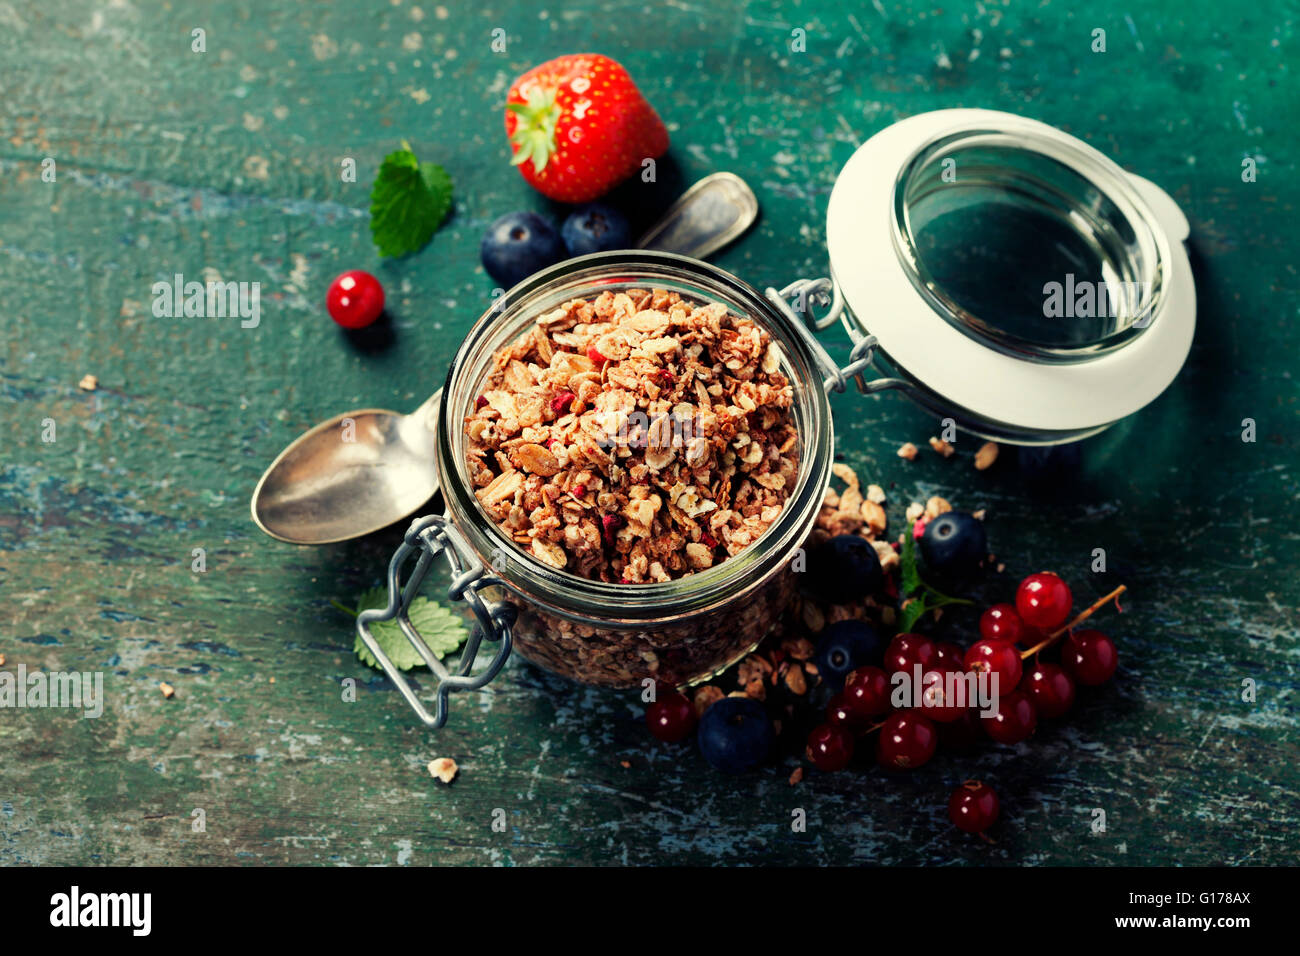 Healthy breakfast of muesli, berries with yogurt and seeds on dark background -  Healthy food, Diet, Detox, Clean Eating or Vege Stock Photo